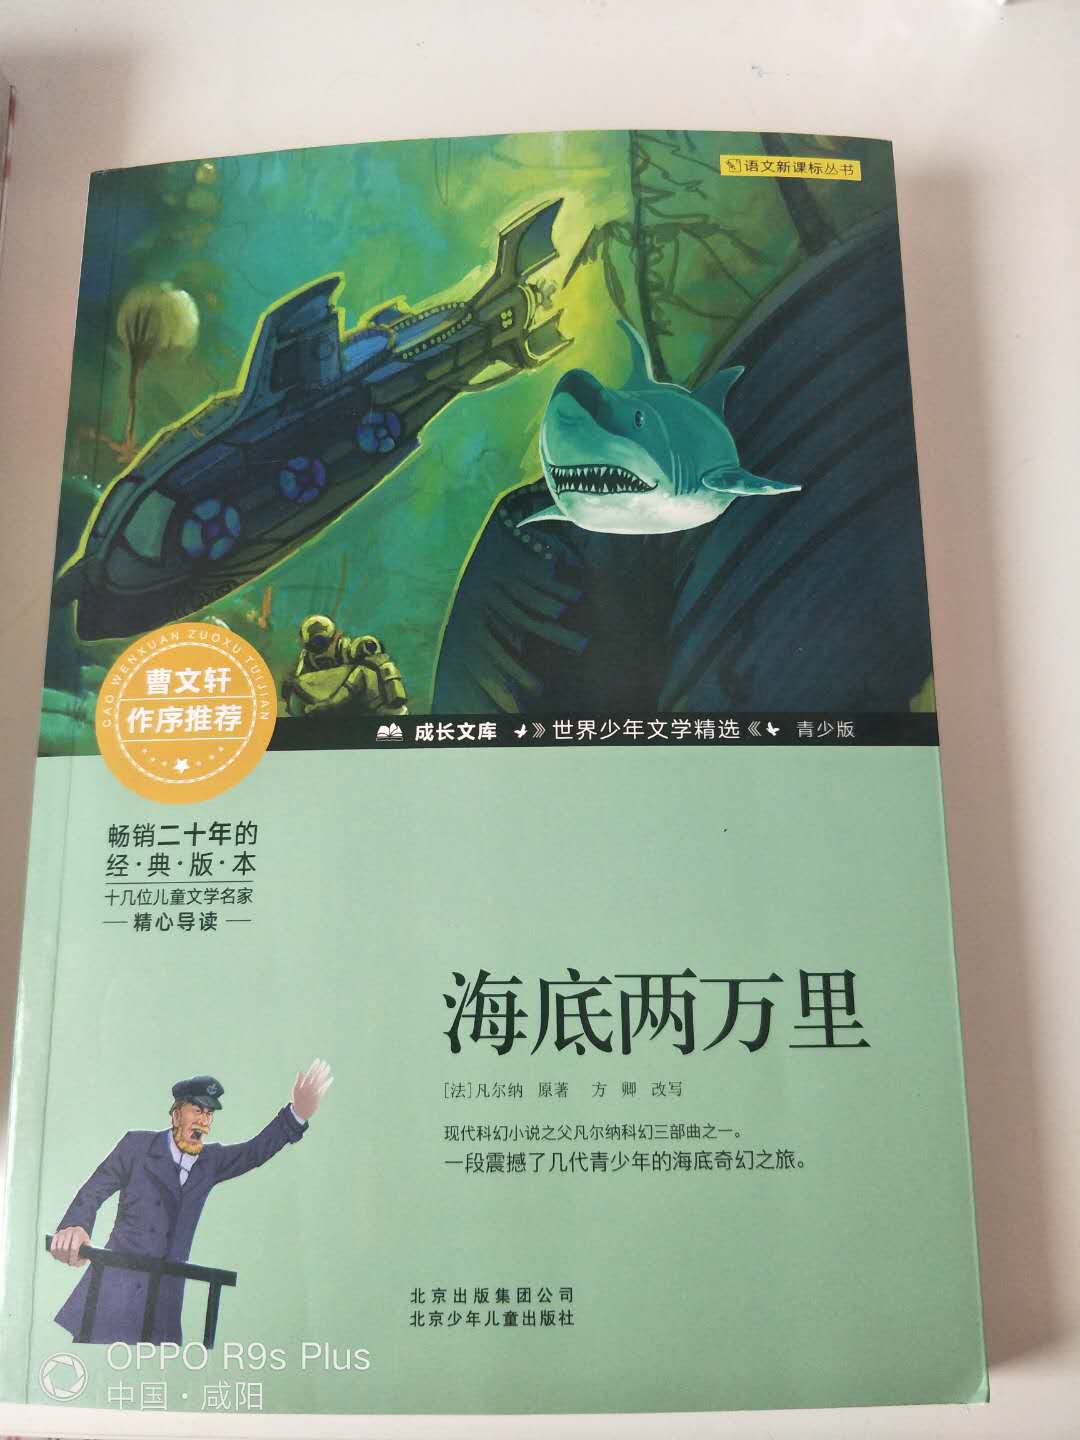 书的印刷不错，是北京少年儿童出版社的，很适合小学生阅读。